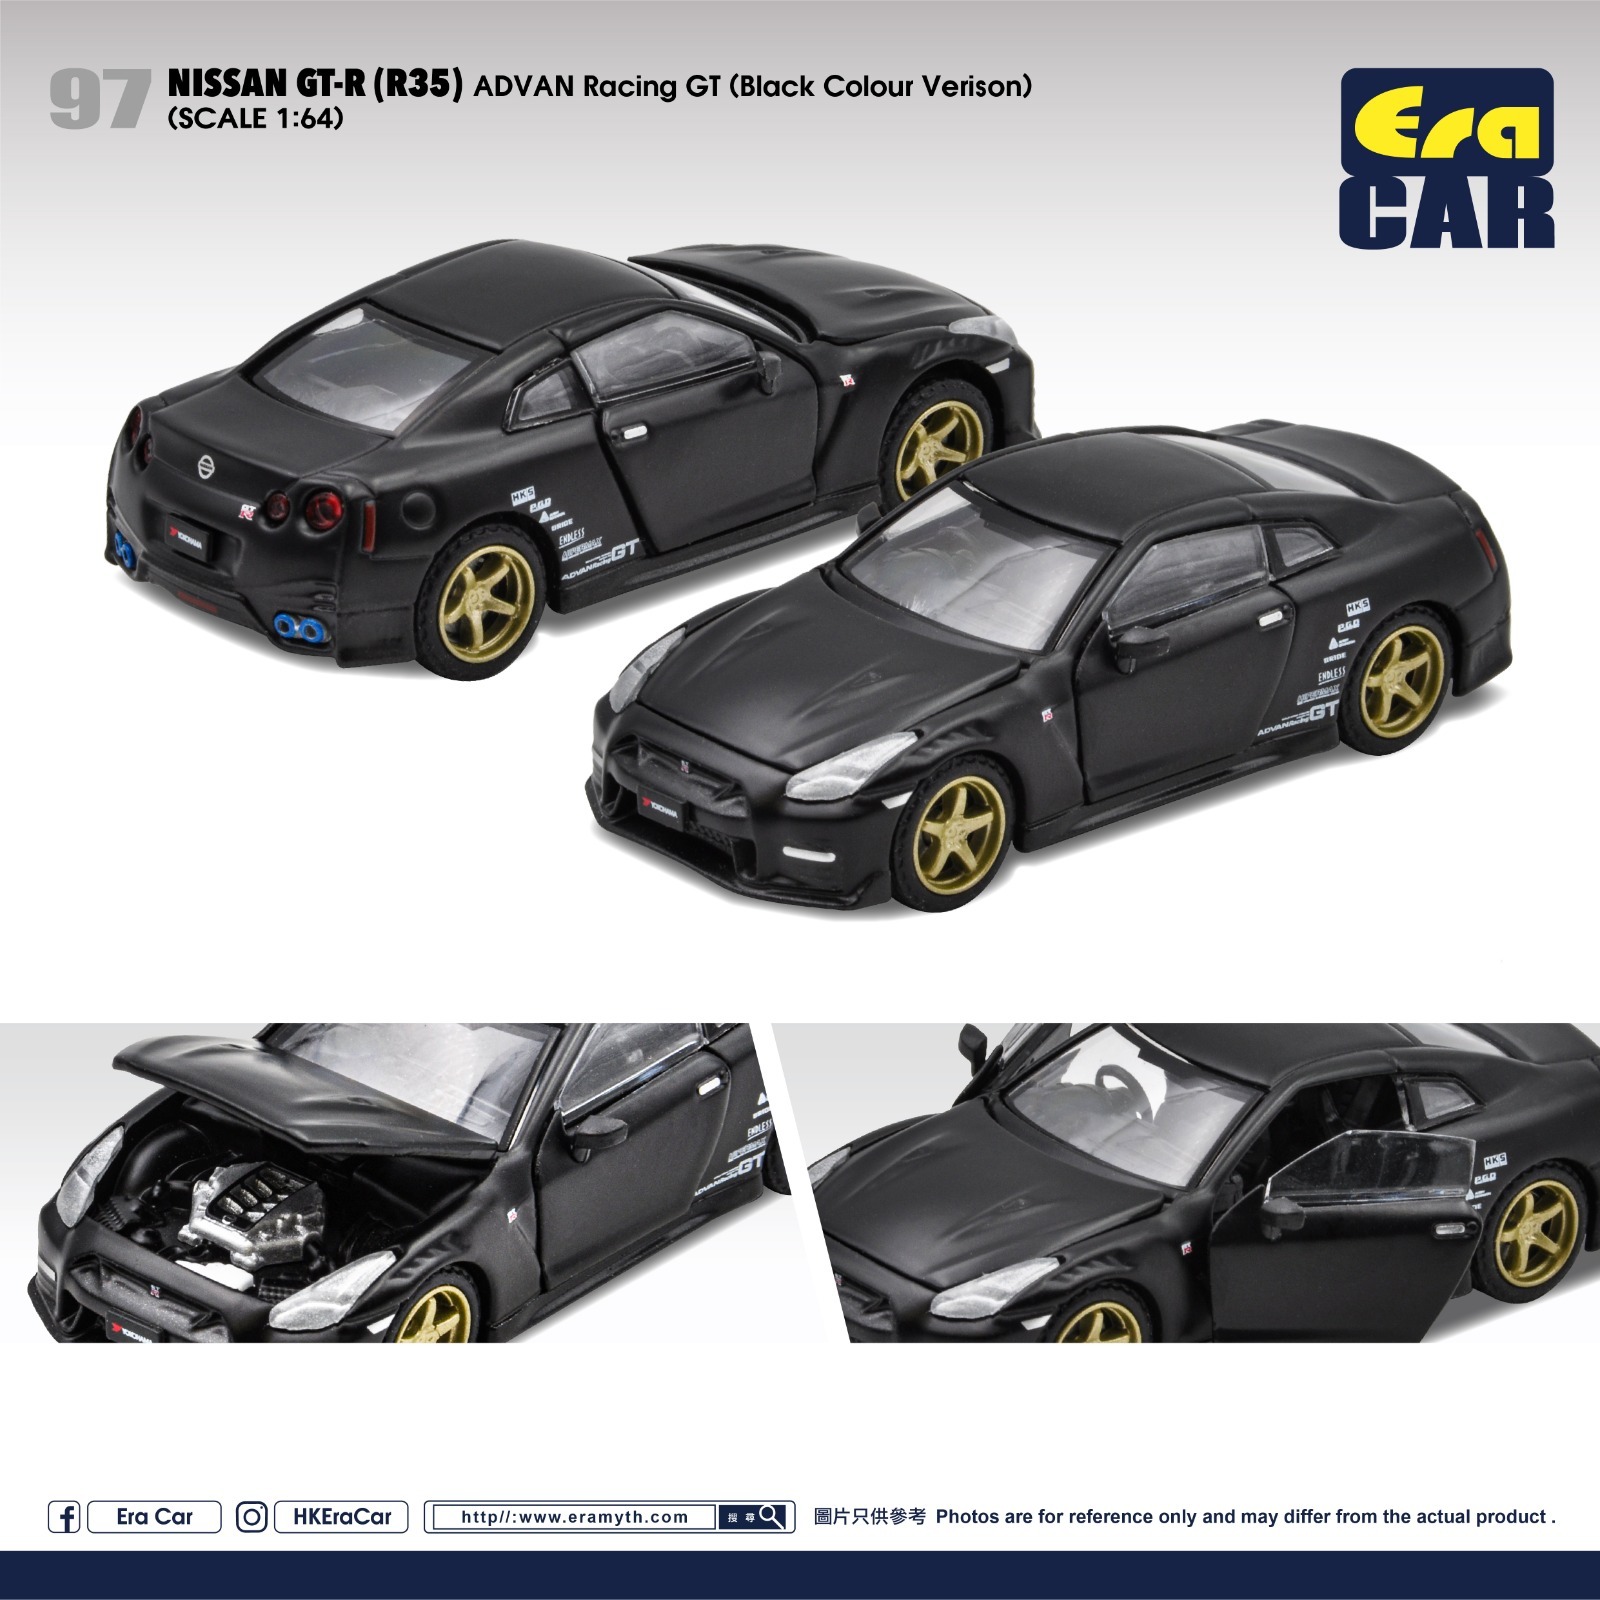 ERA CAR 2020 日產GT-R ADVAN Racing GT (Black